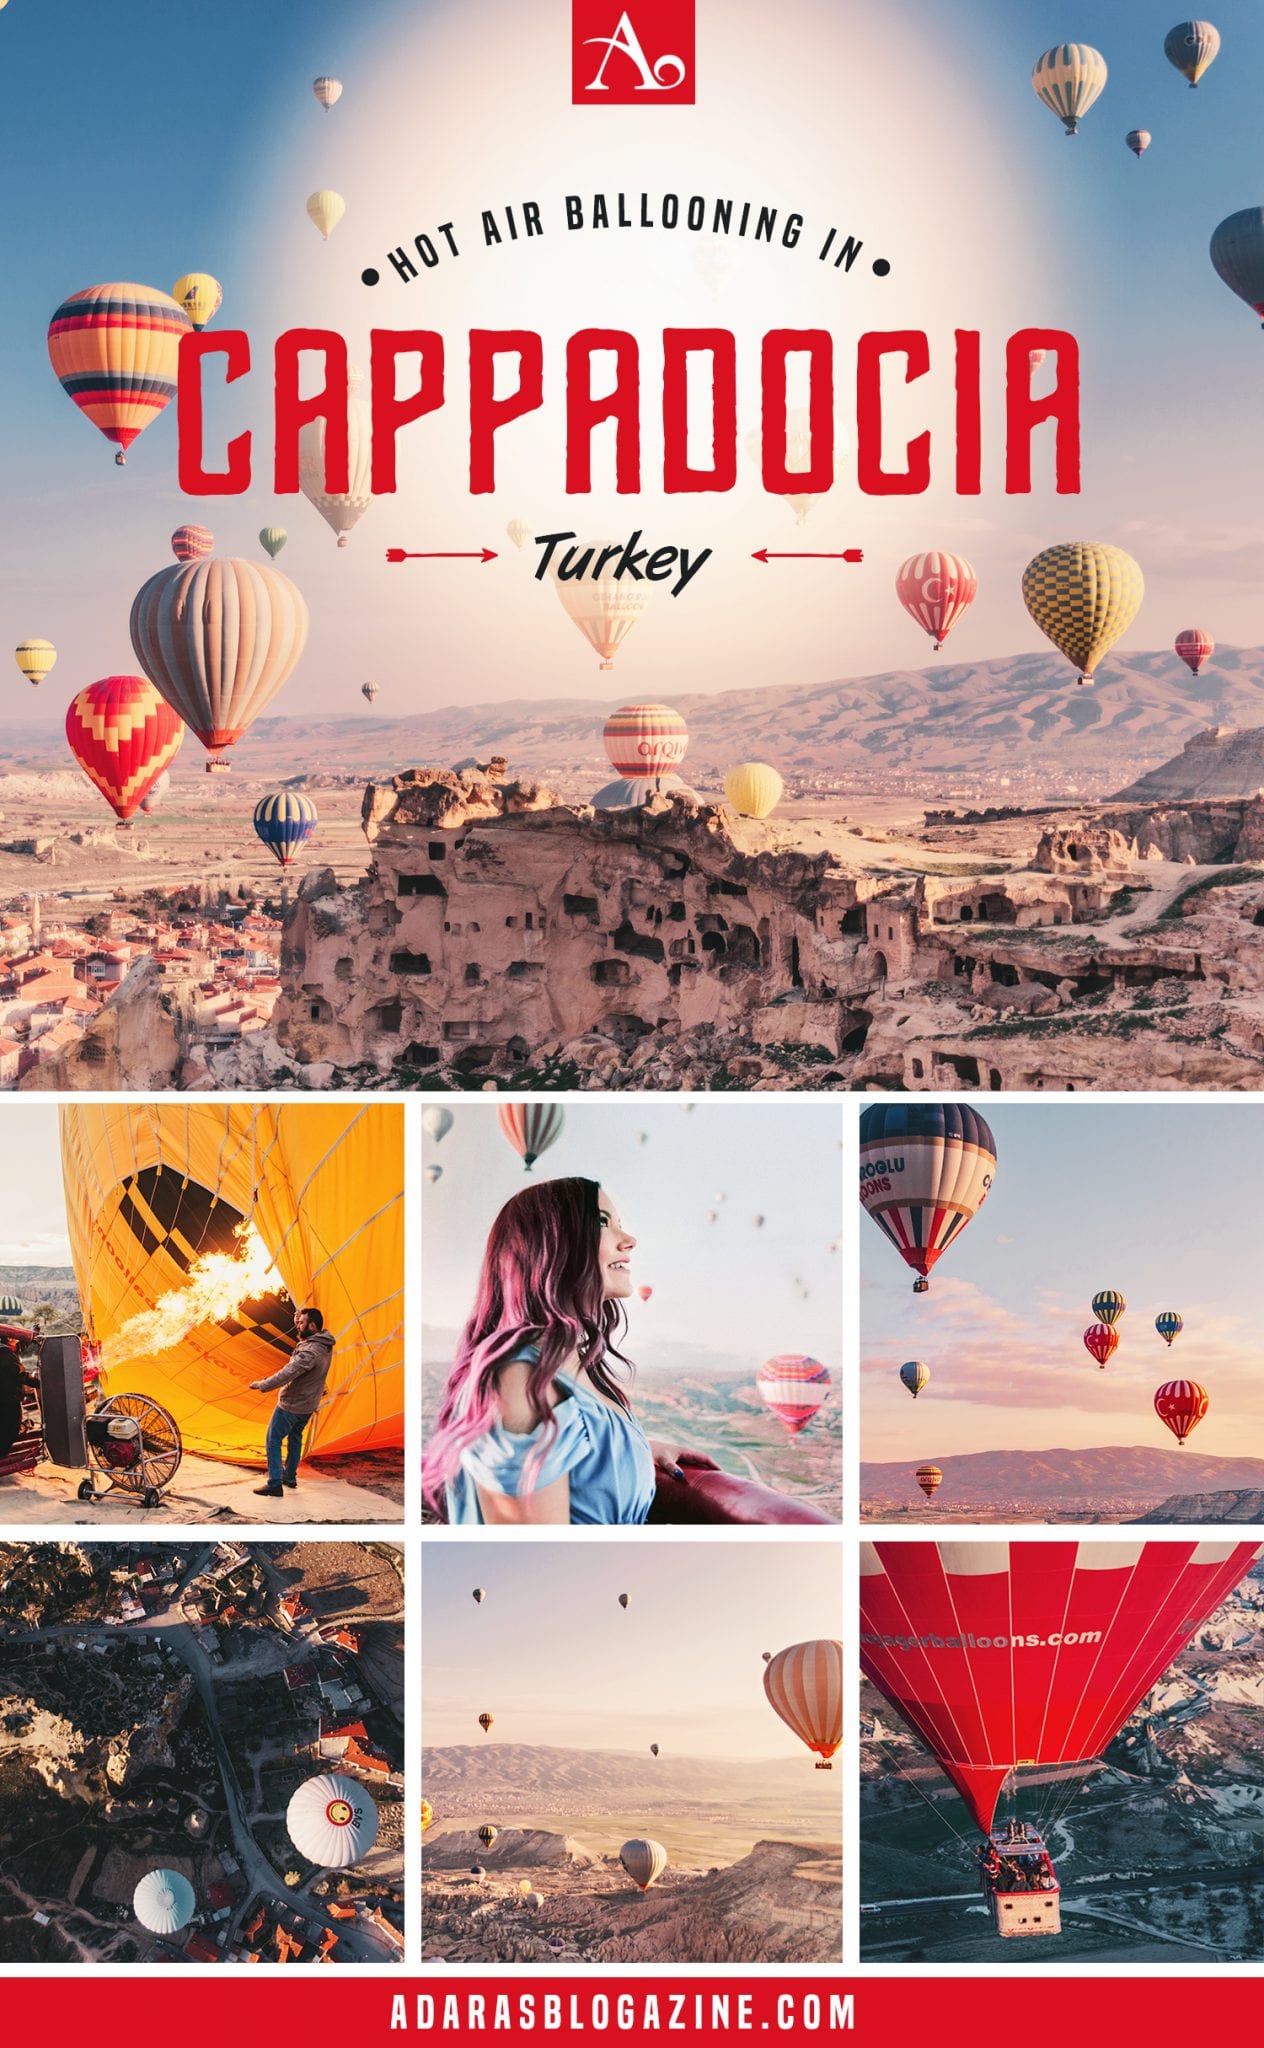 Guide: Hot Air Ballooning in Cappadocia, Turkey